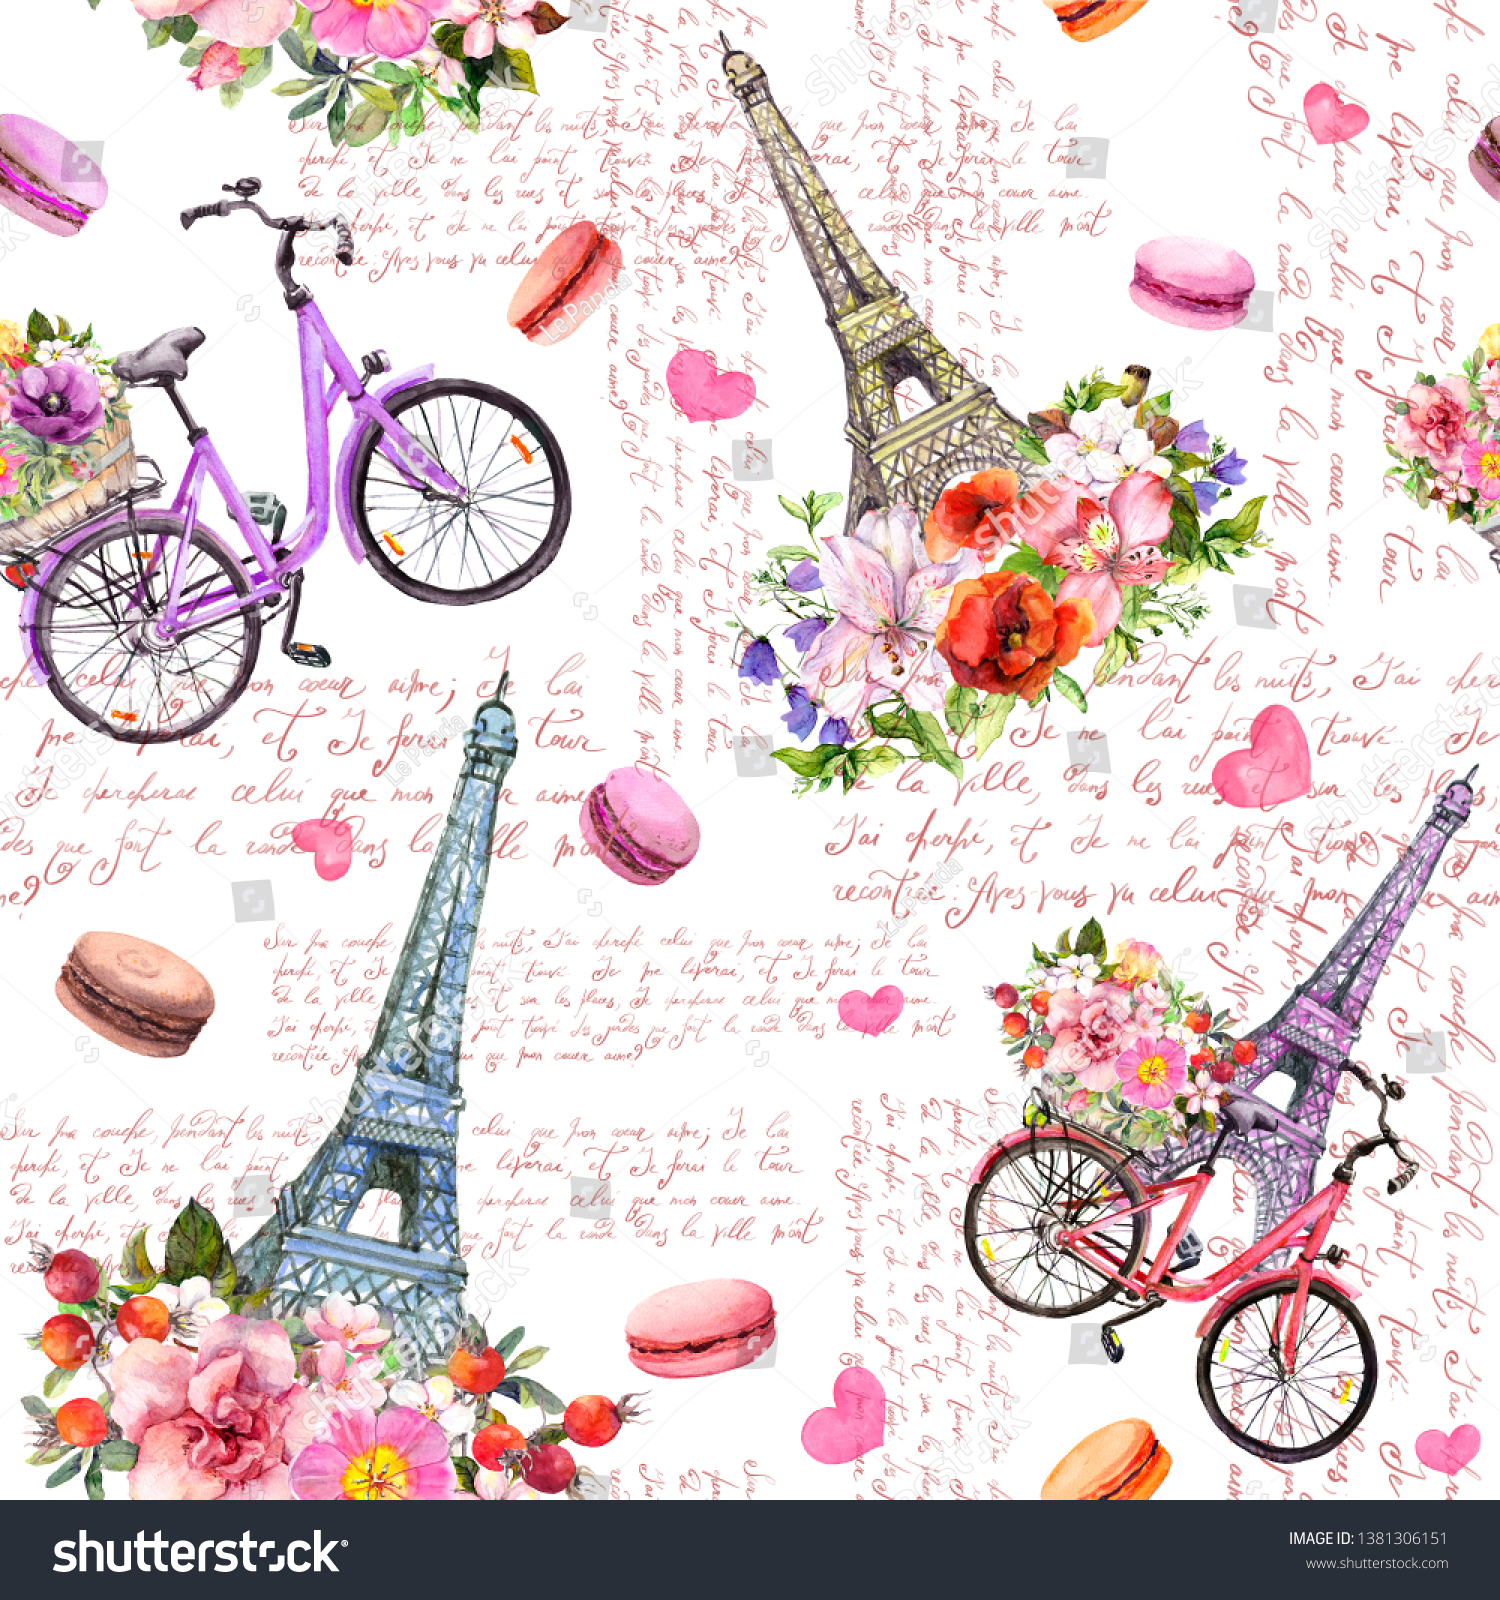 パリでの愛 エッフェル塔 ハート 花 自転車 マカロン 手書きのフランス語のテキスト ピンク色のシームレスな水彩柄 のイラスト素材